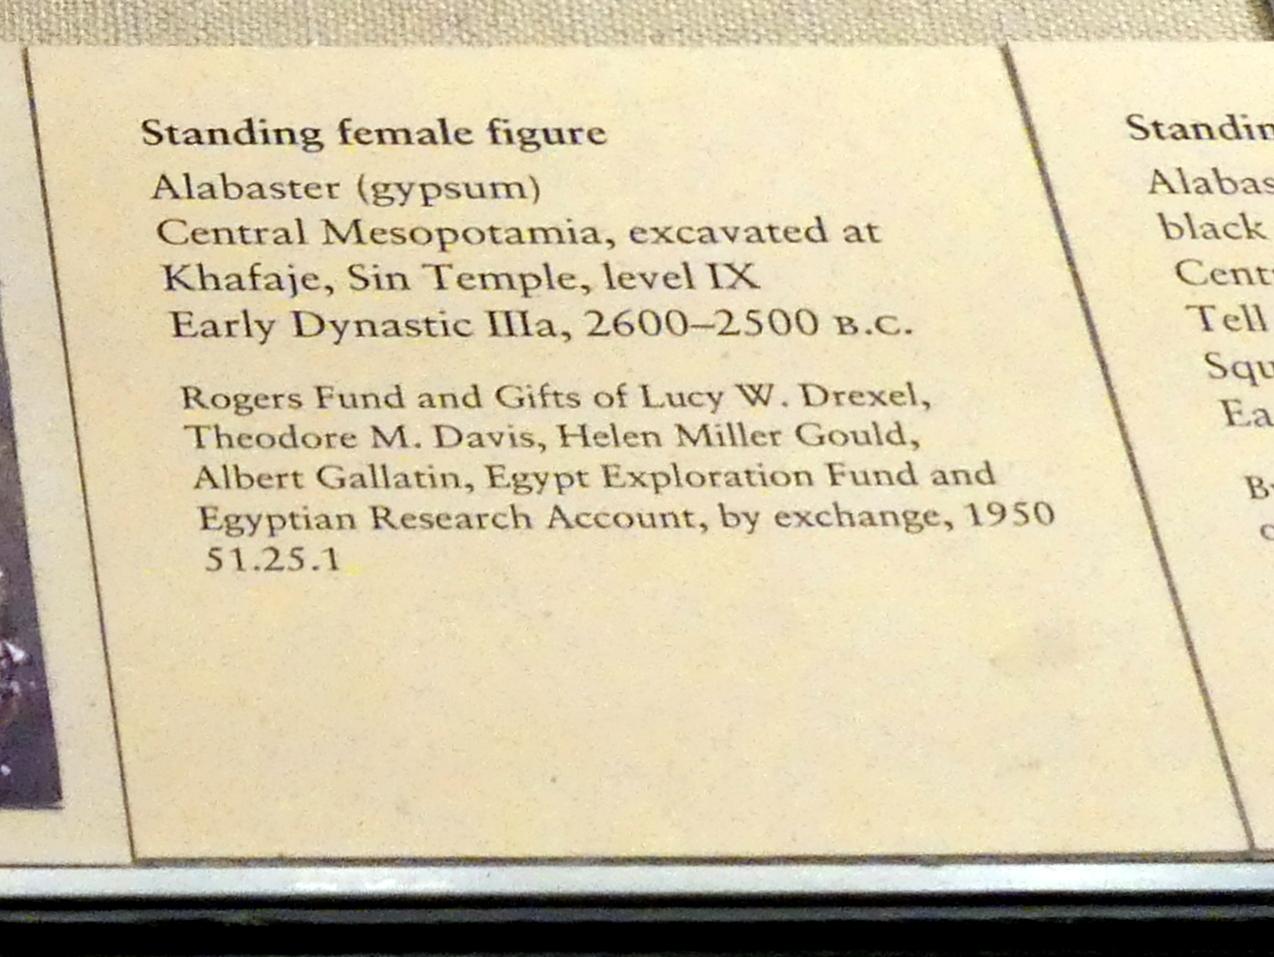 Stehende weibliche Figur, Frühdynastisch IIIa (Mesopotamien), 2900 - 2000 v. Chr., 2600 - 2500 v. Chr., Bild 2/2